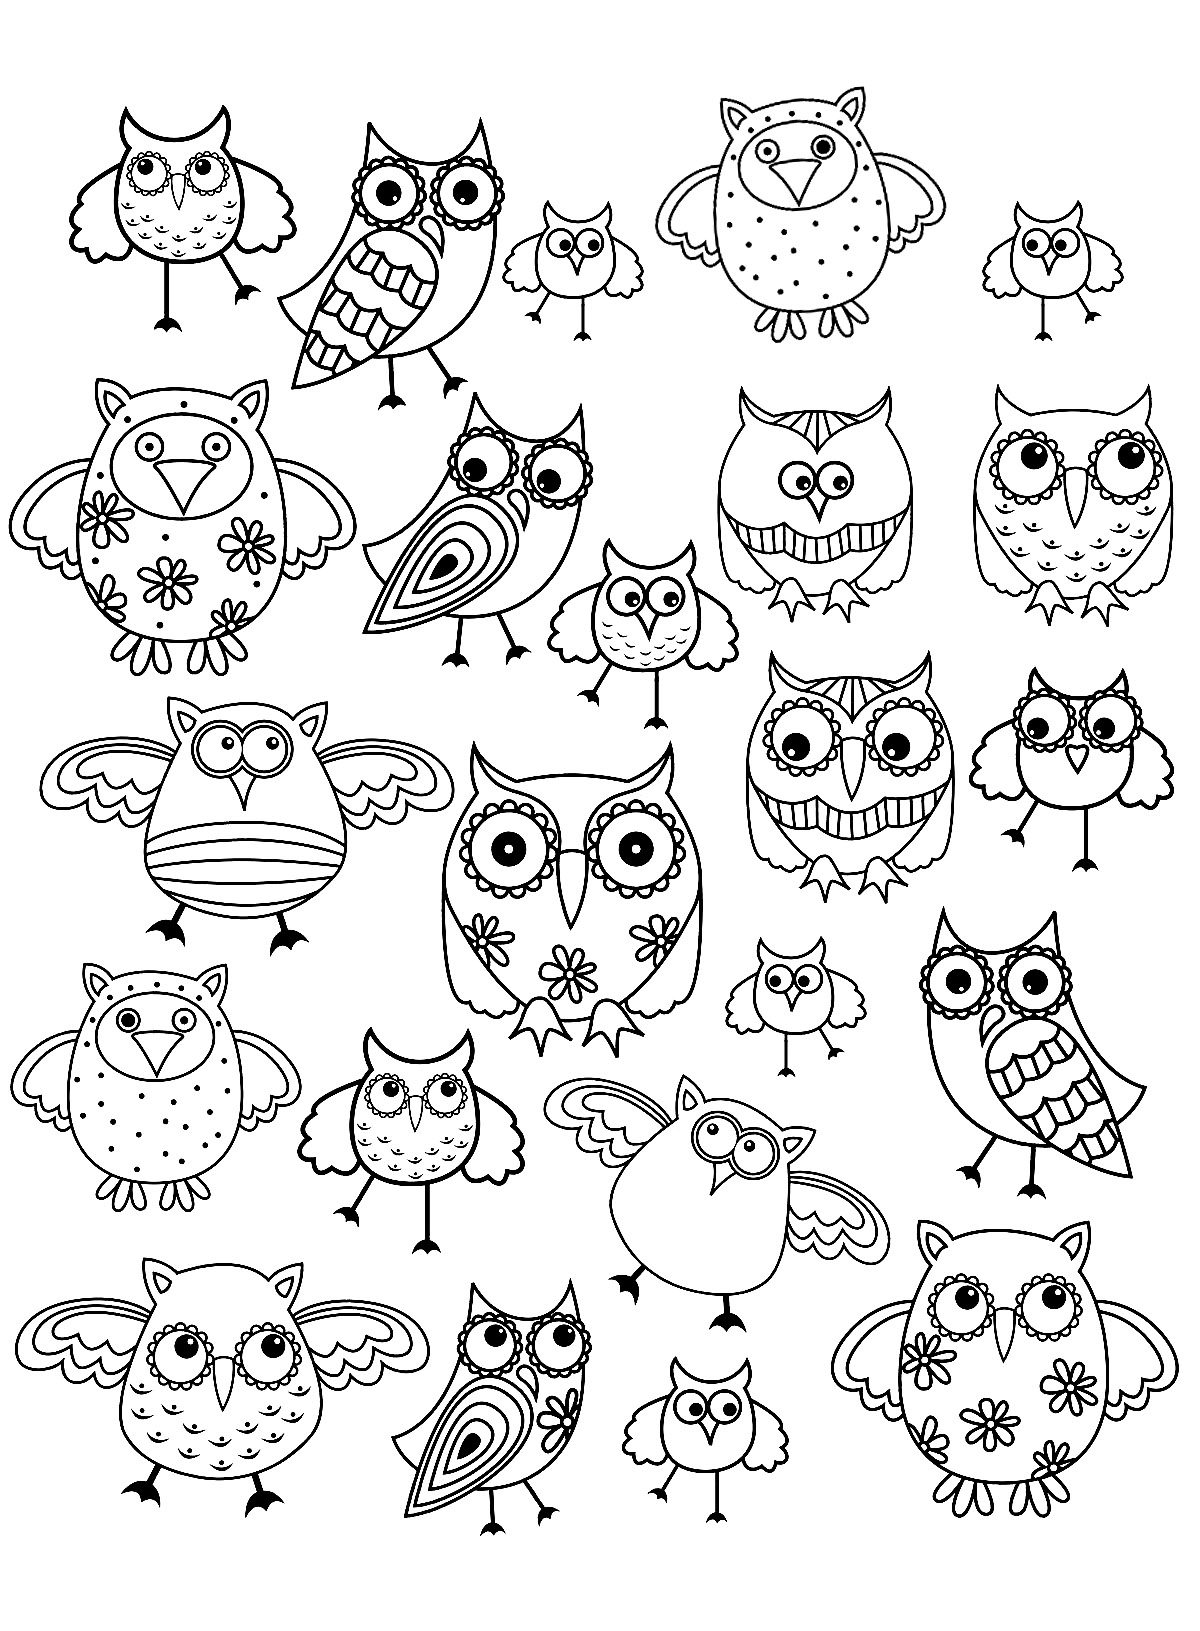 Doodle : little owls & owls